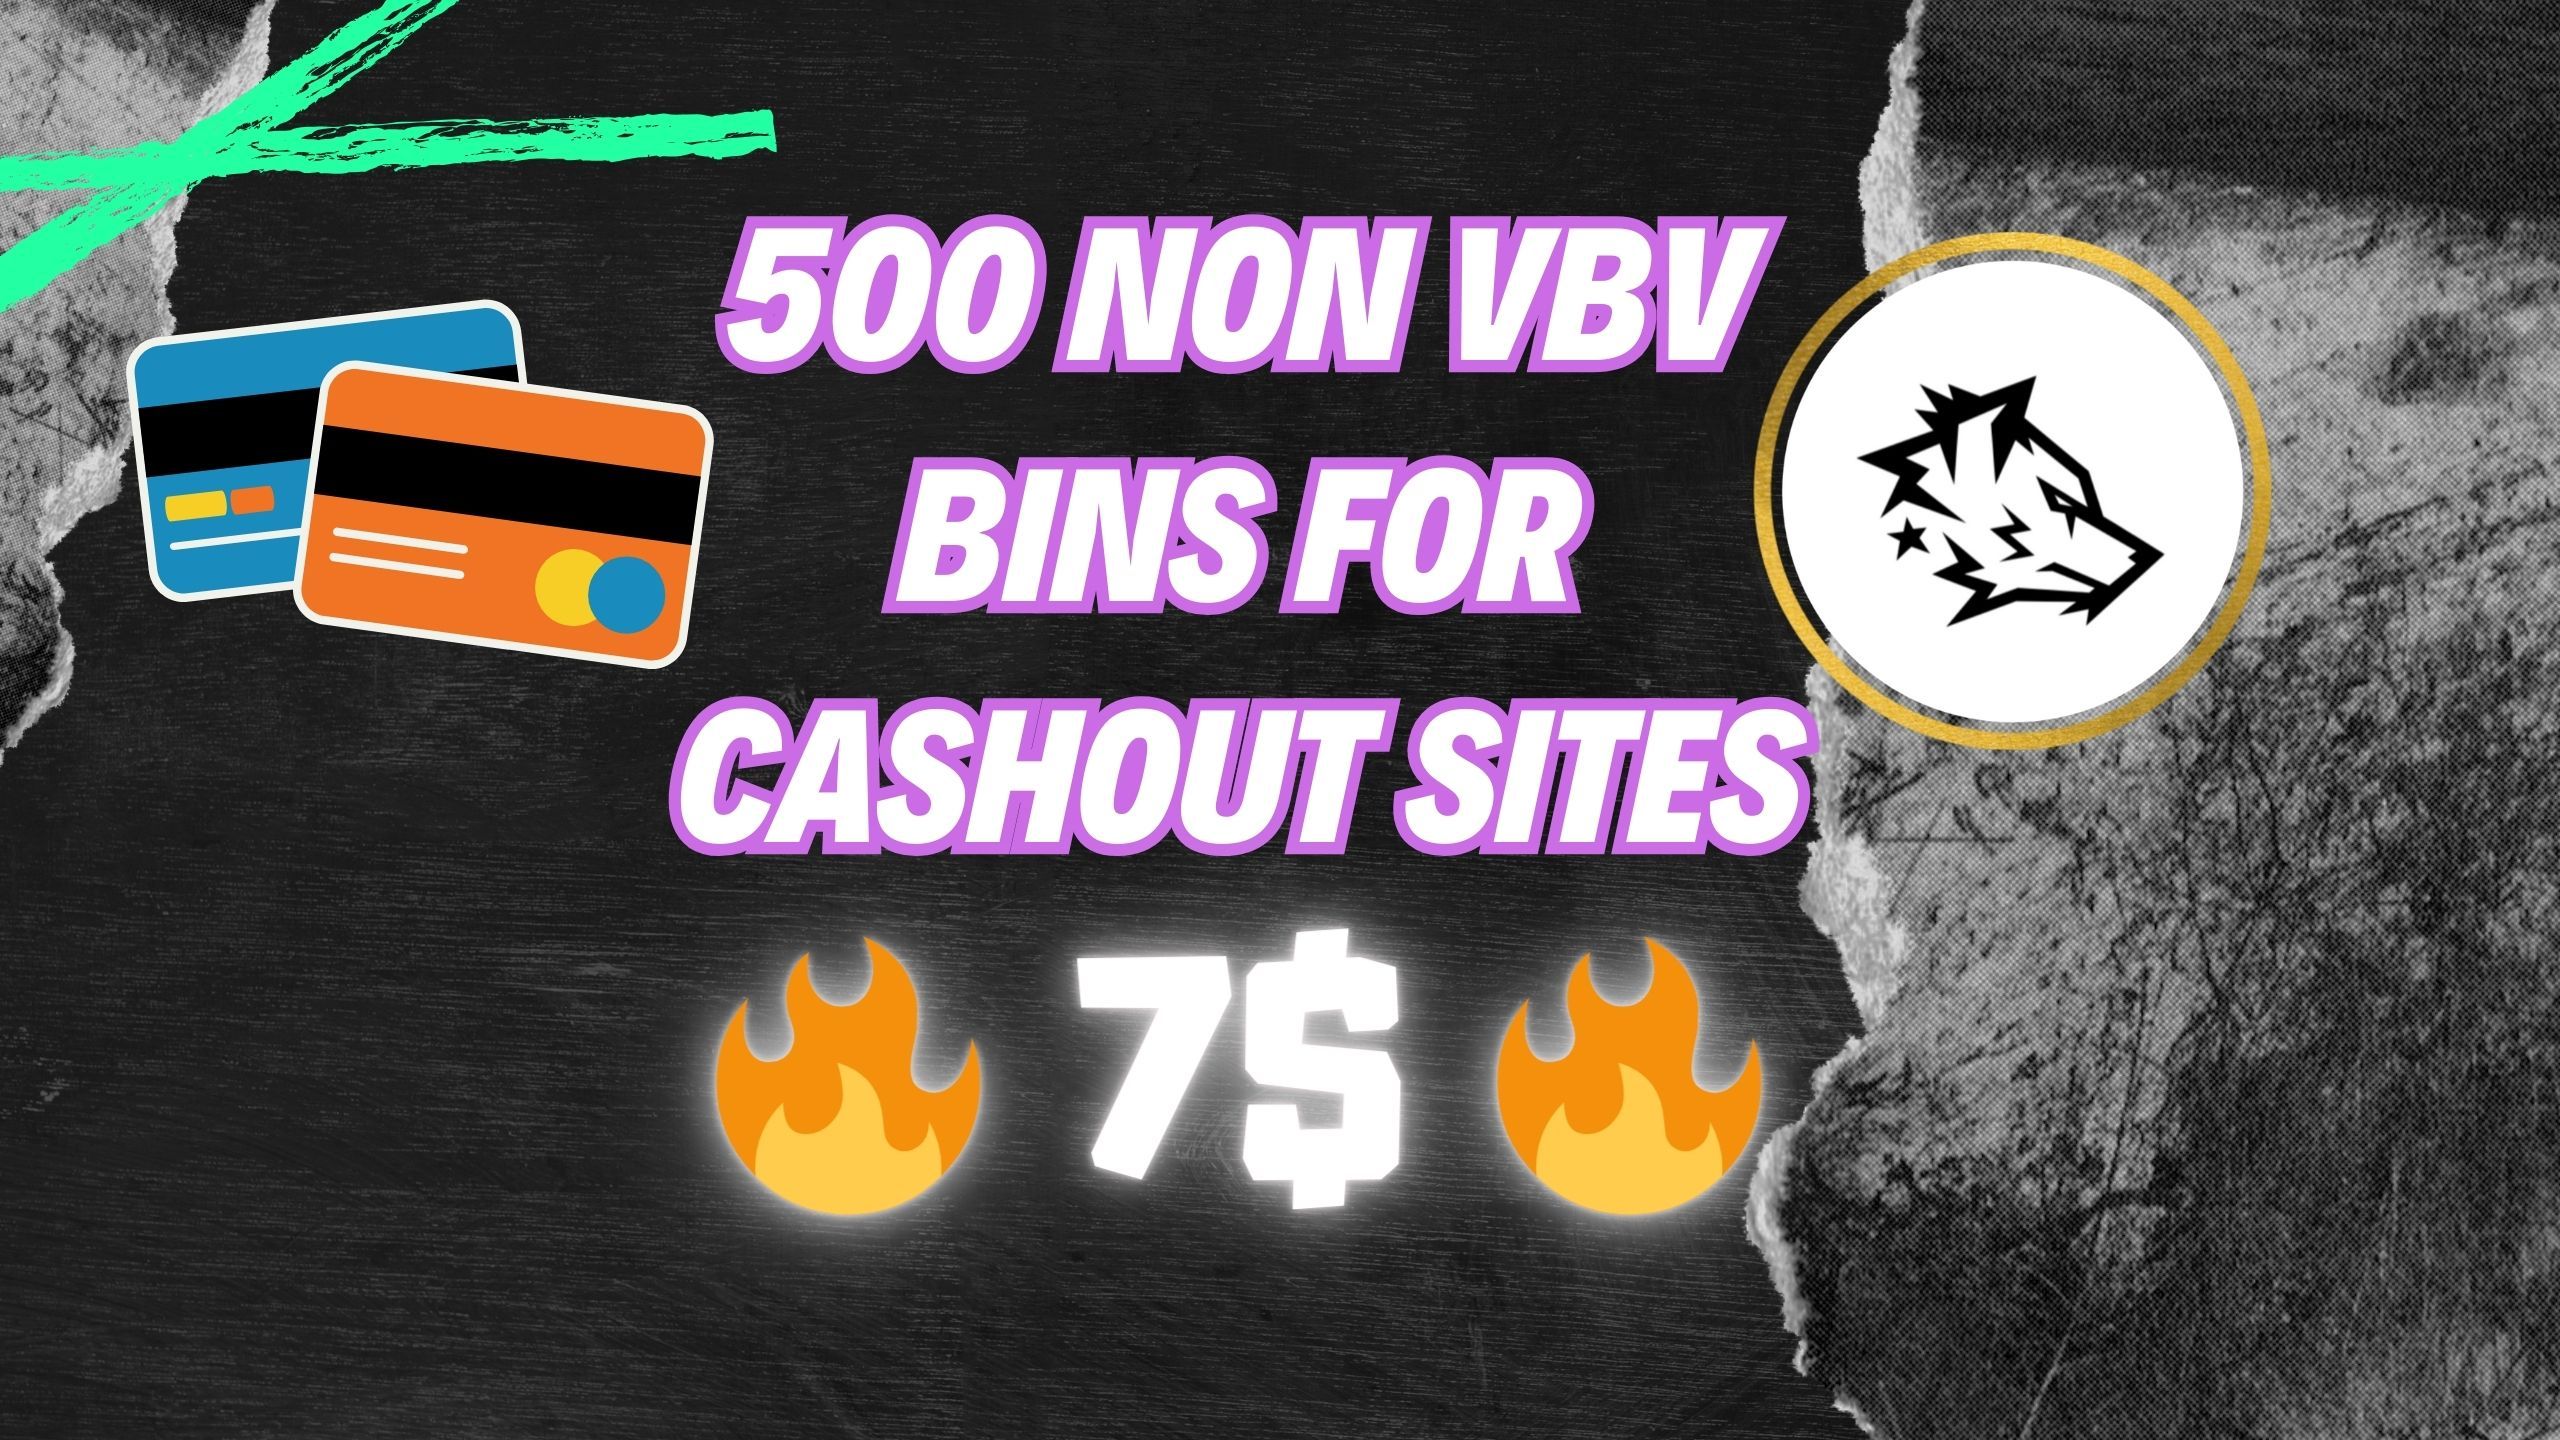 500 NON VBV BINS FOR CASHOUT SITES